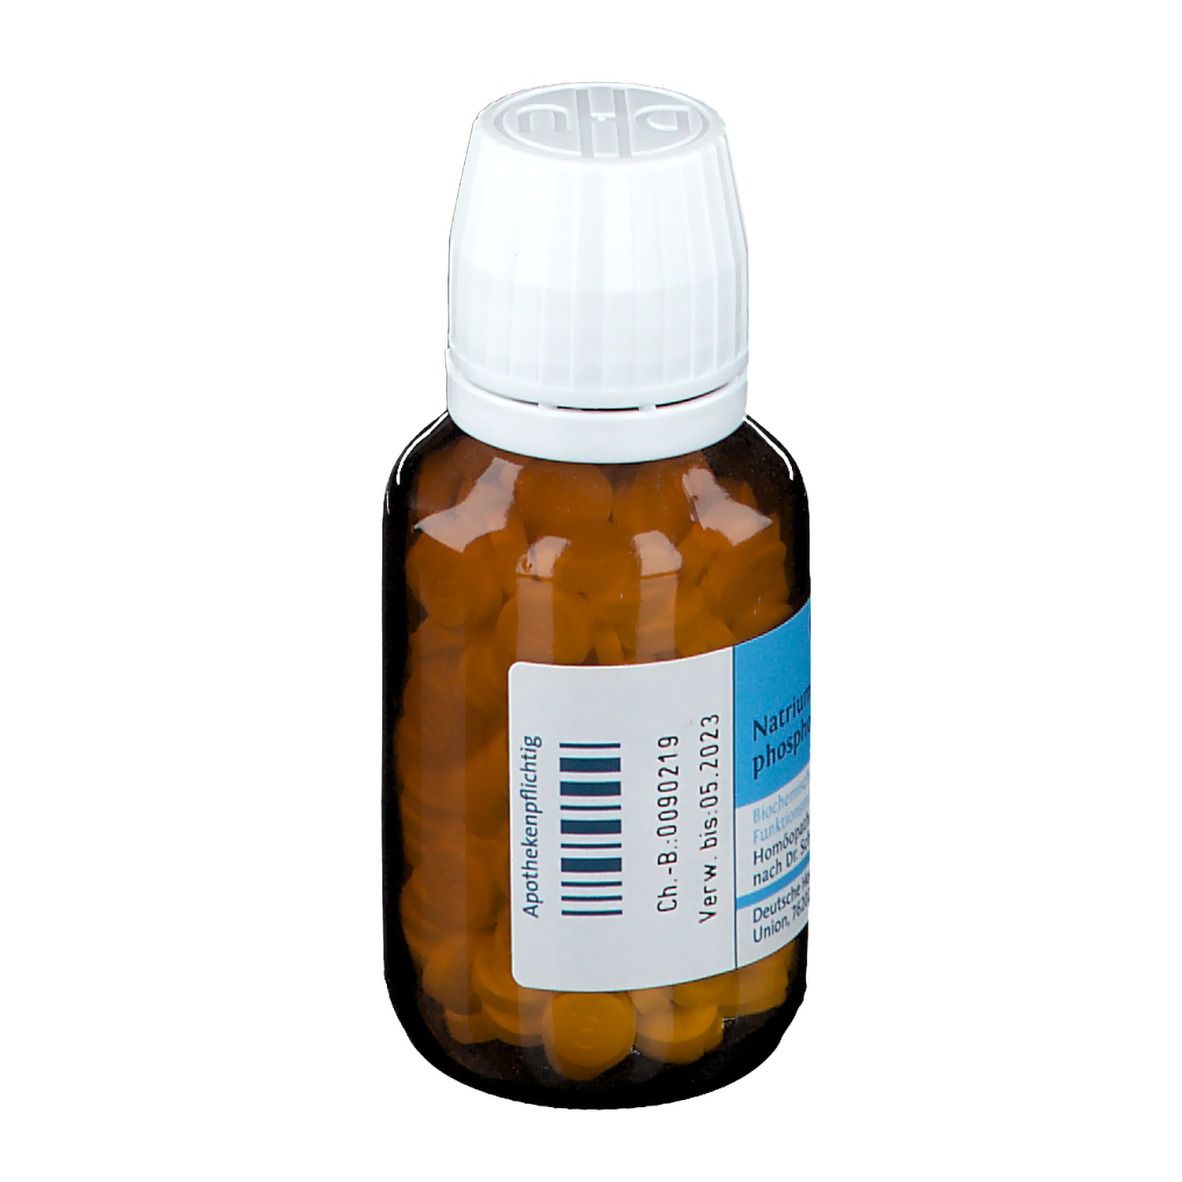 DHU Schüßler-Salz Nr. 9® Natrium phosphoricum D3